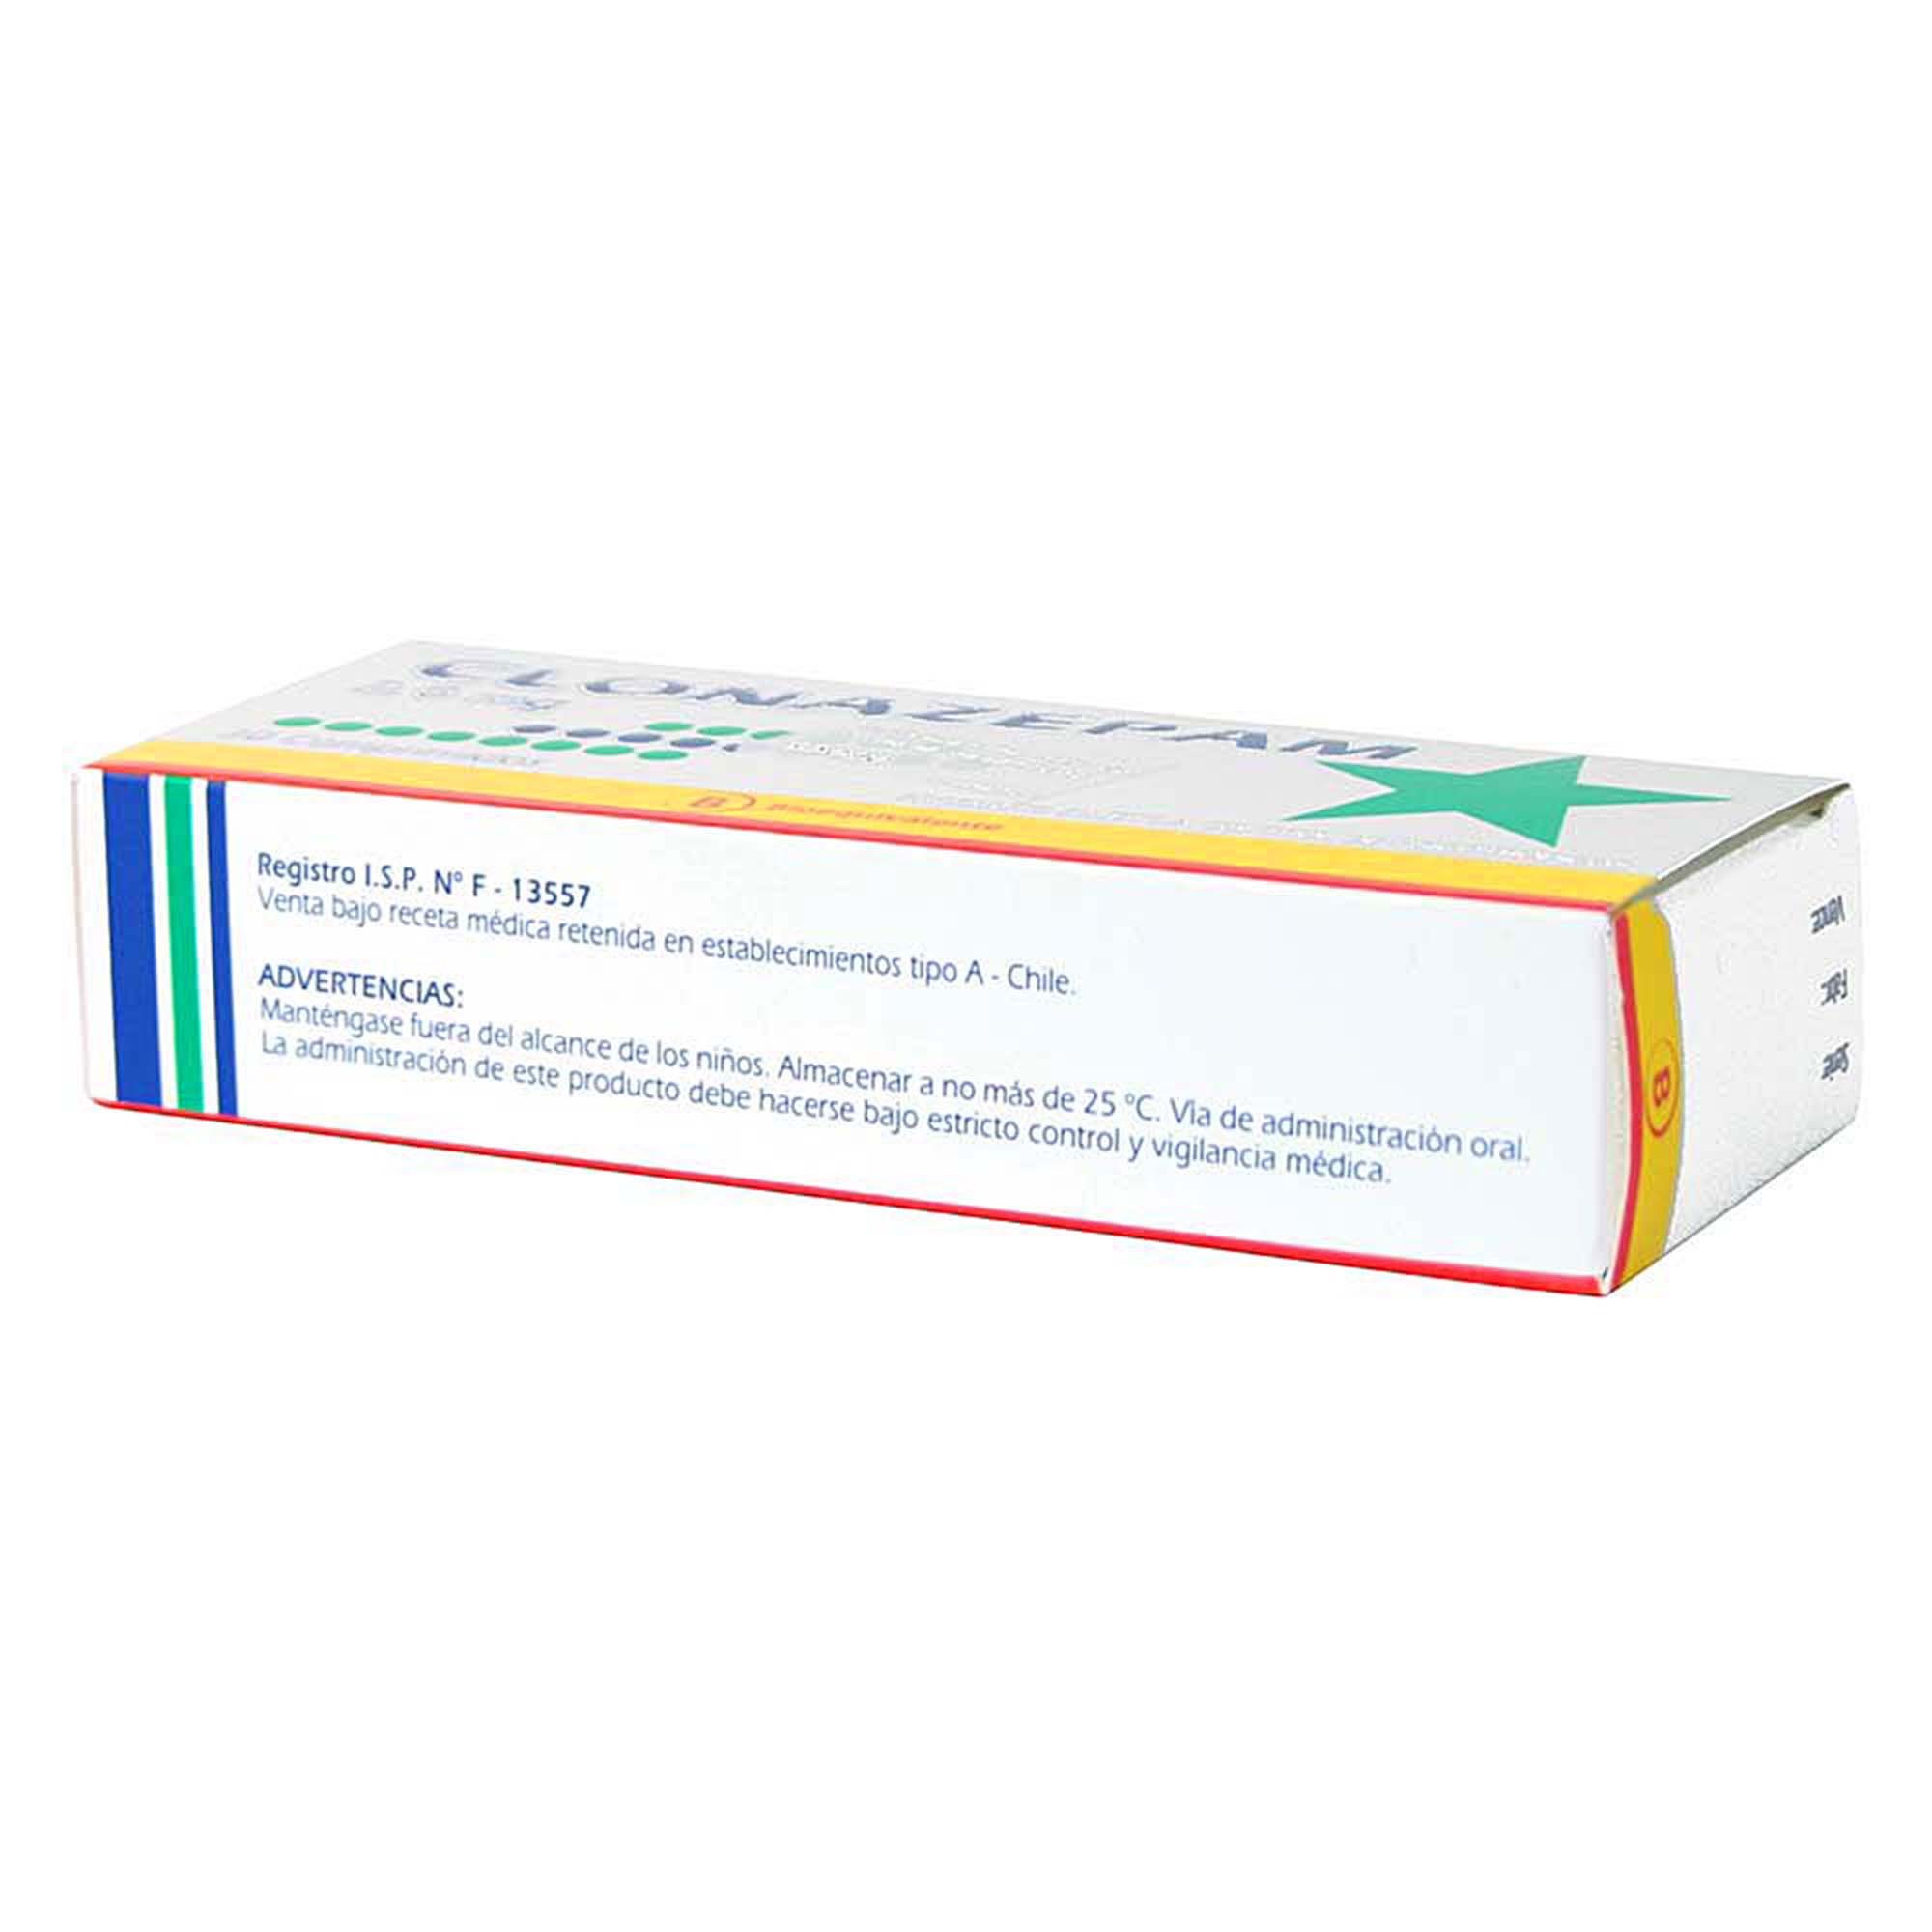 Clonazepam 2 mg 30 Comprimidos | Farmacias Cruz Verde